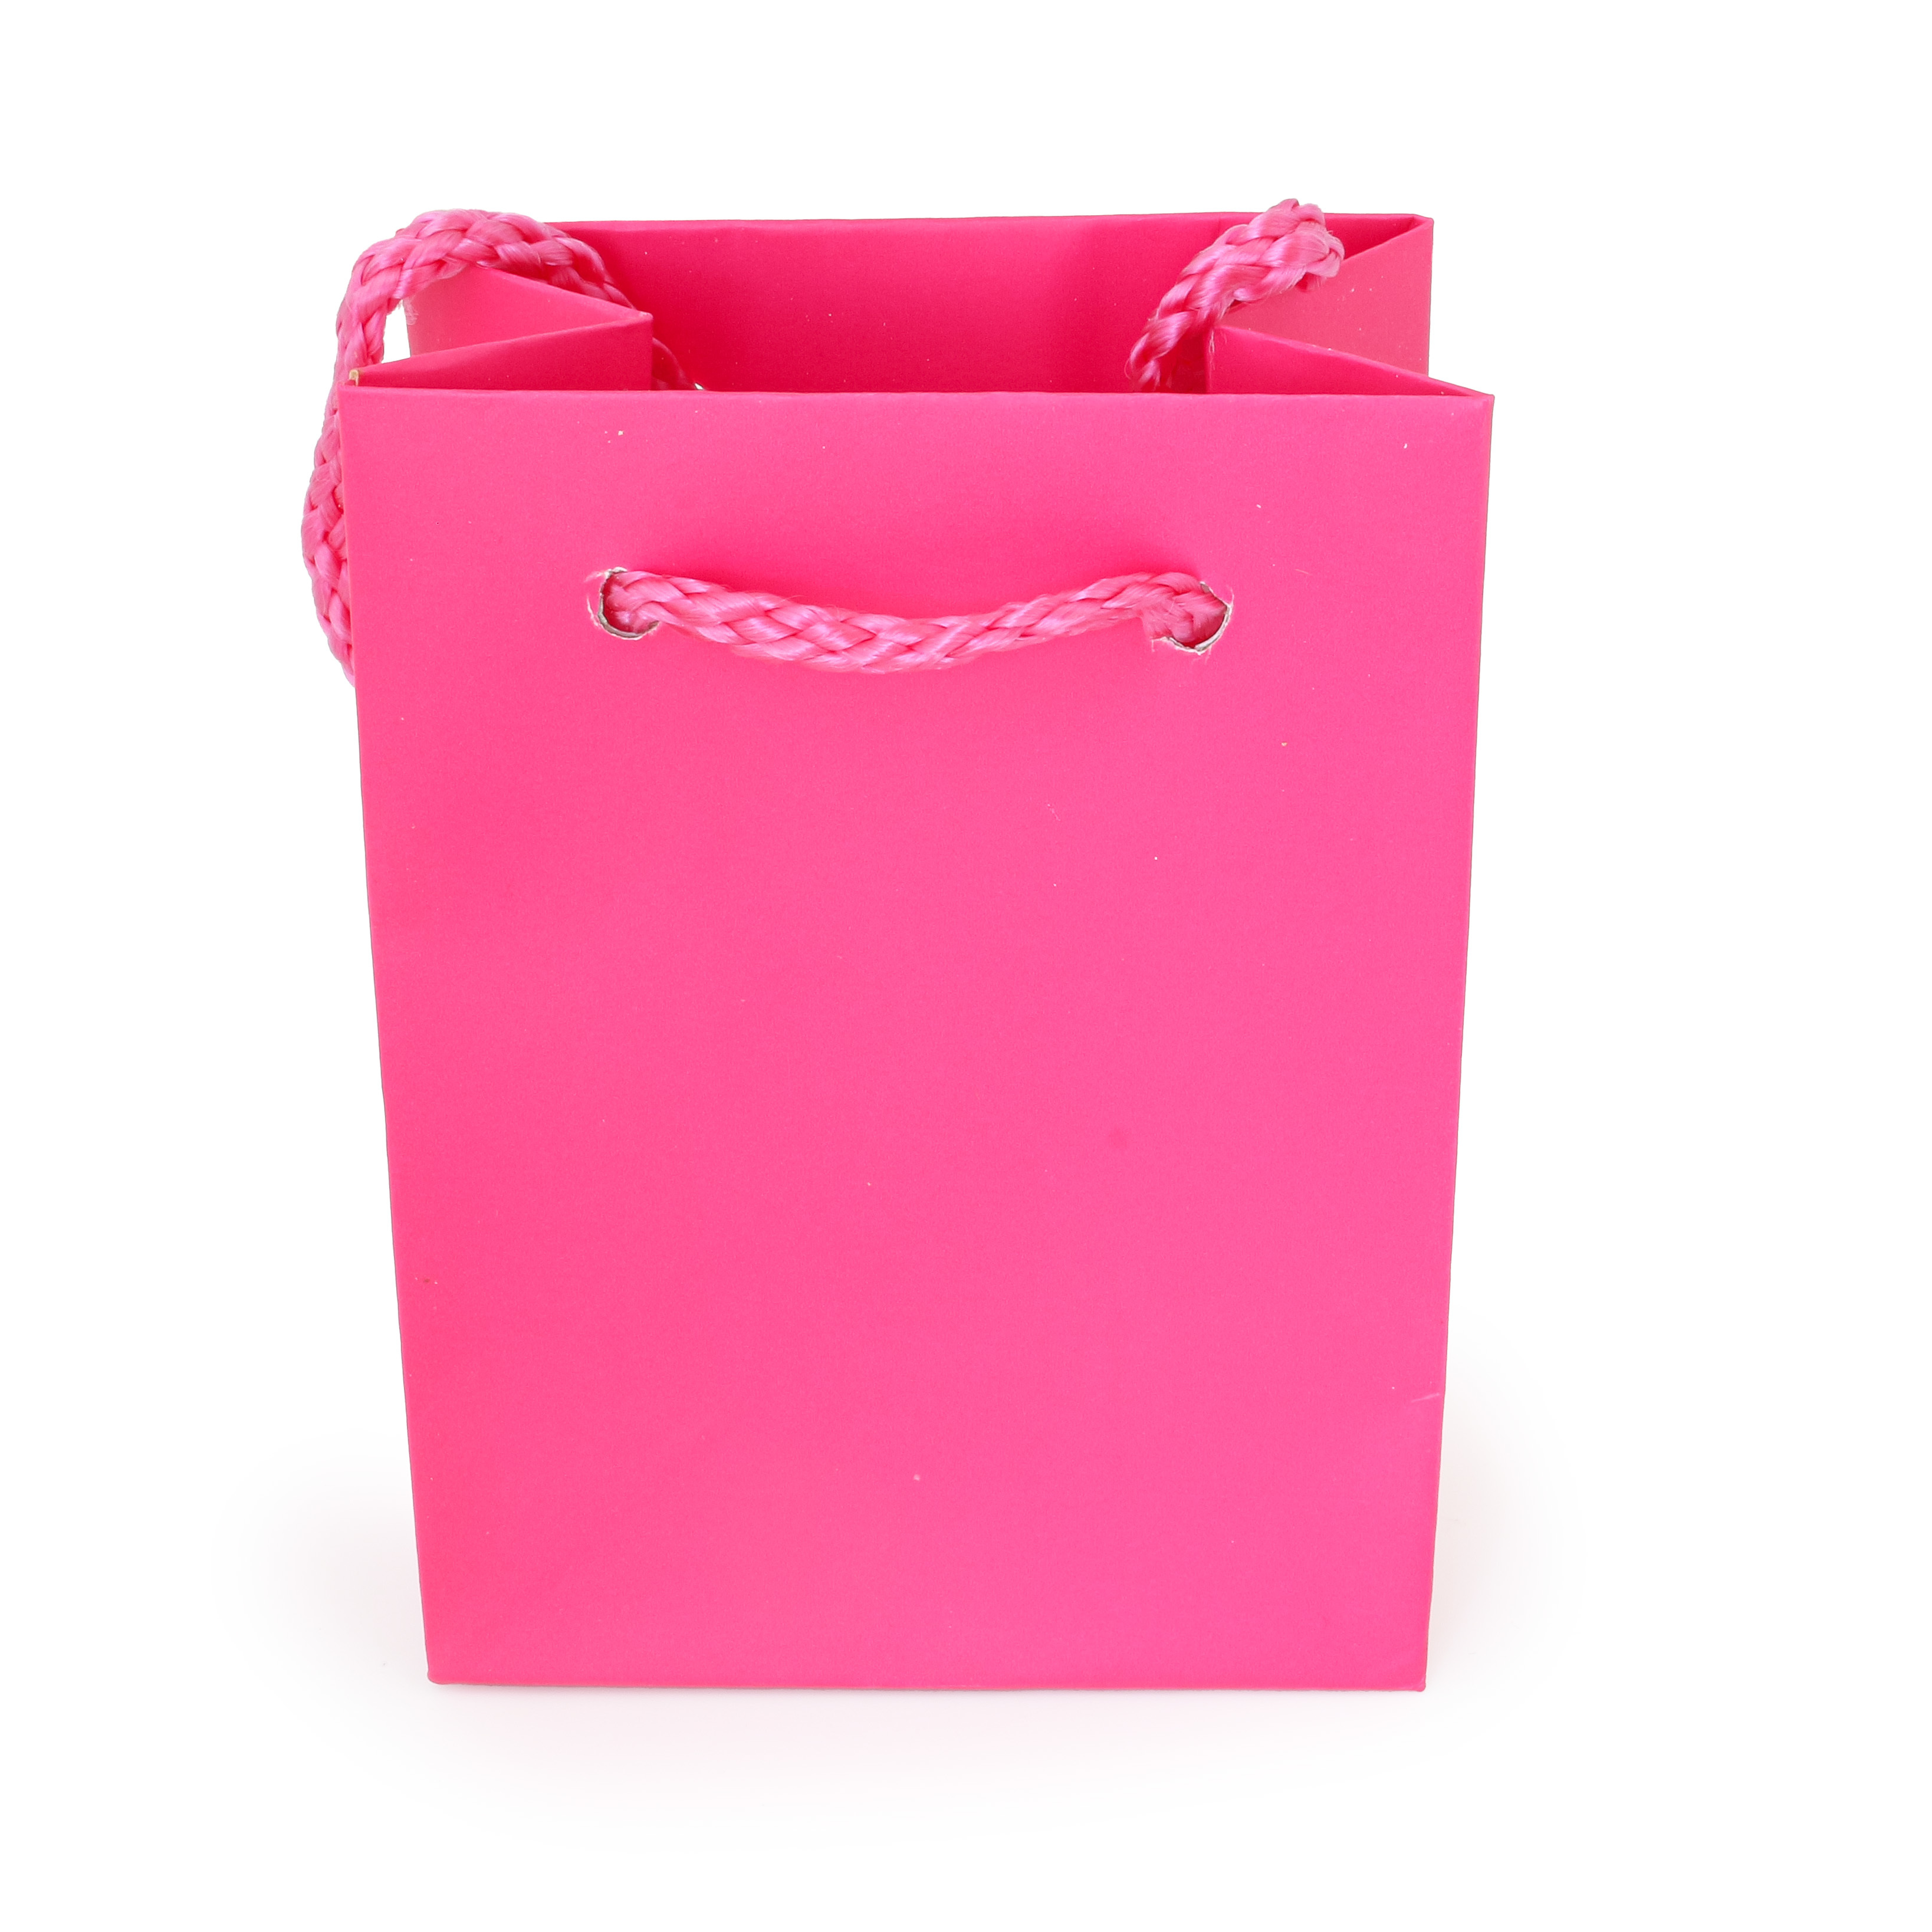 Goodiebag Roze - Tasje voor huwelijk - Zijkant